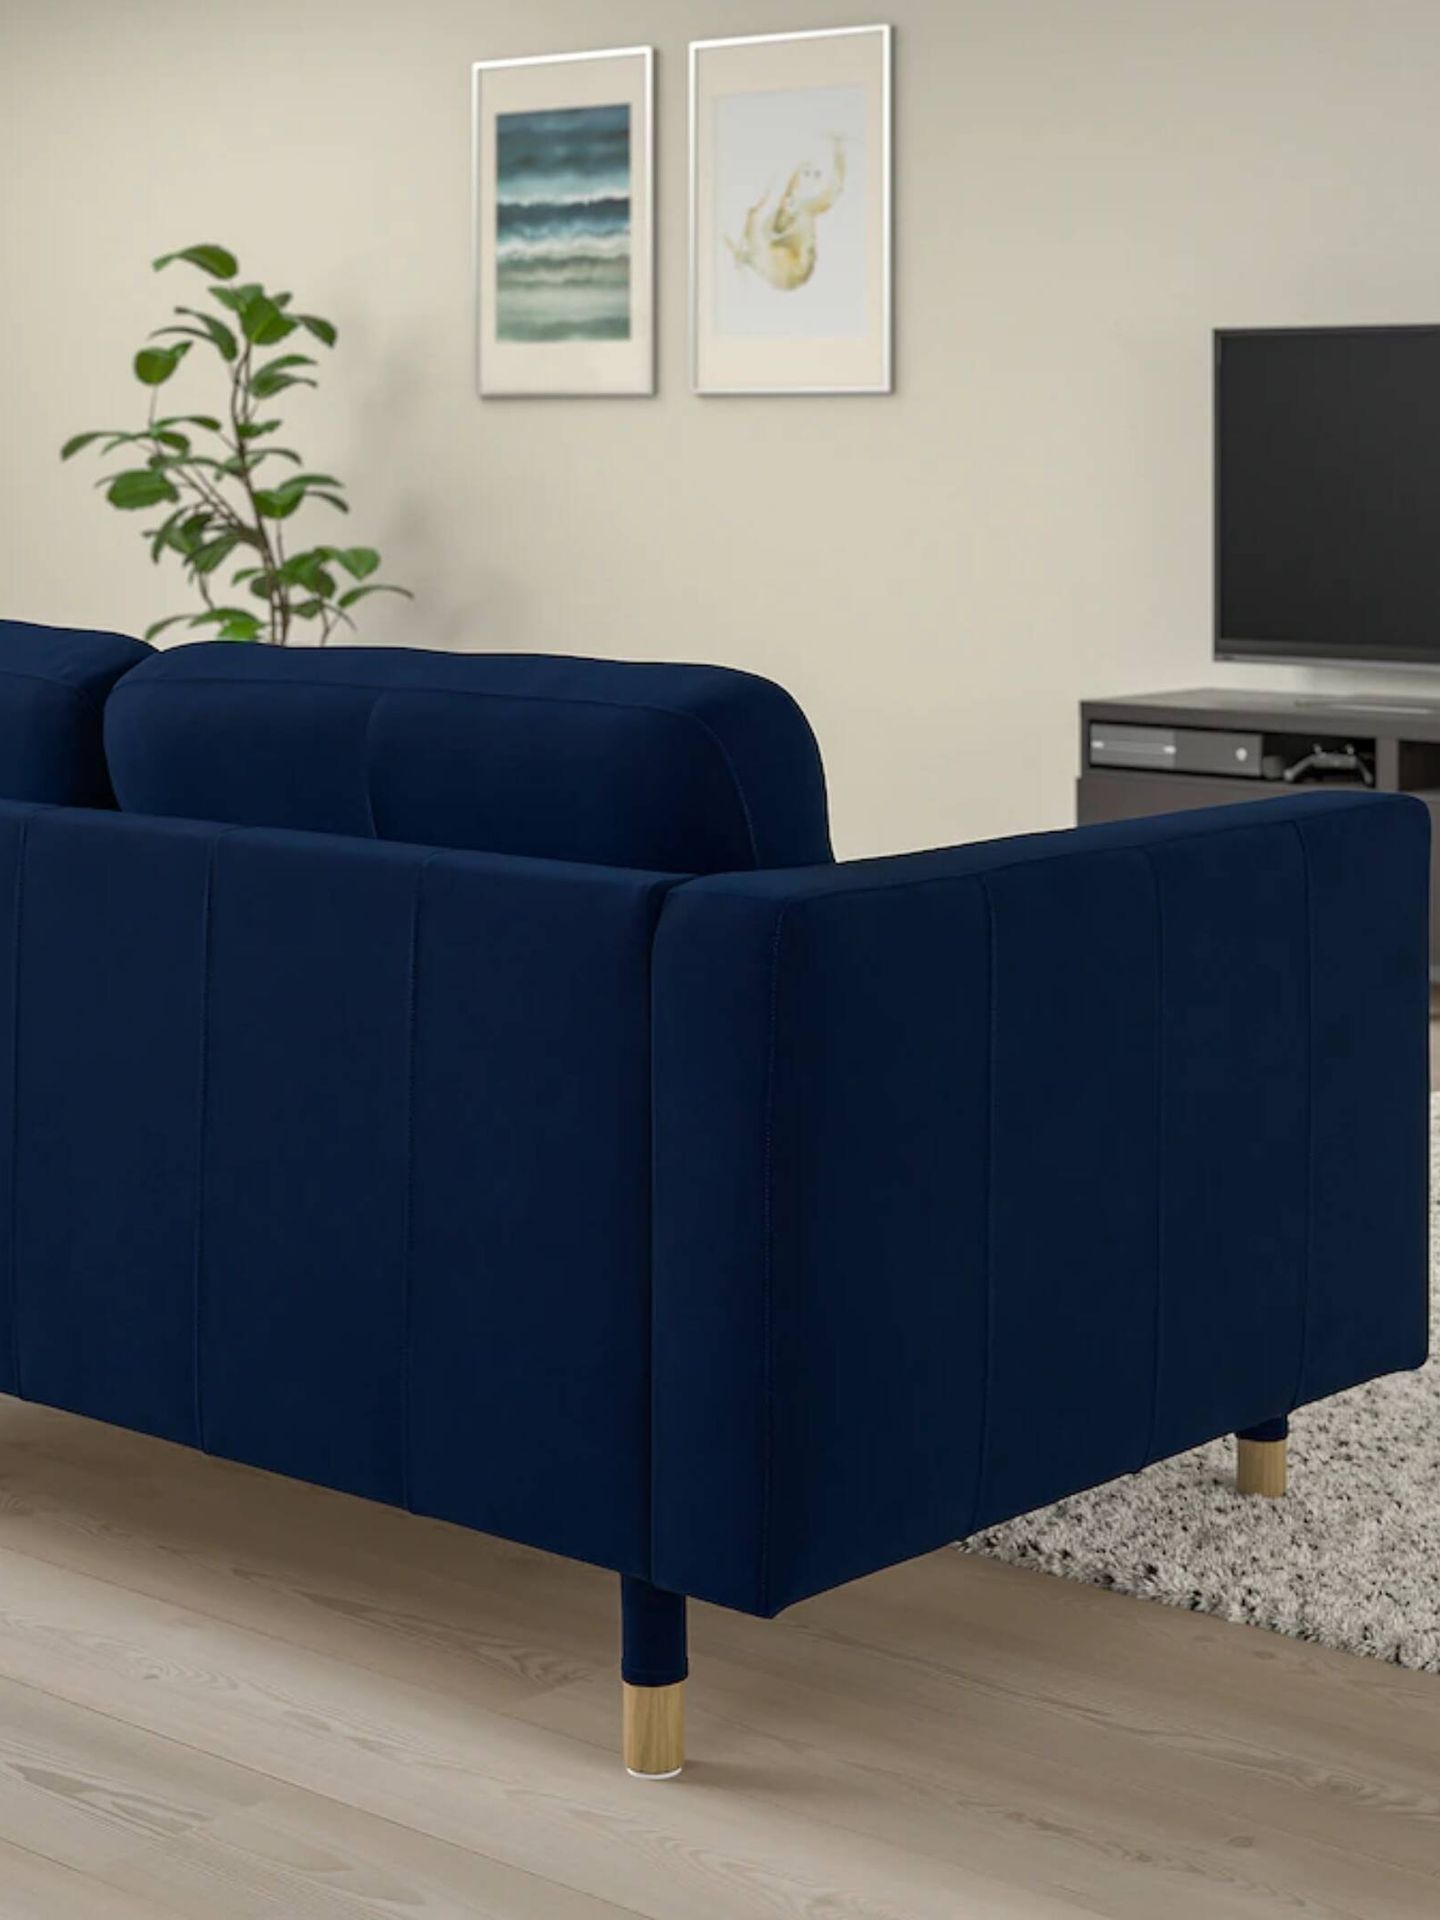 El nuevo sofá de Ikea para darle a tu salón y tu casa un toque especial. (Cortesía)